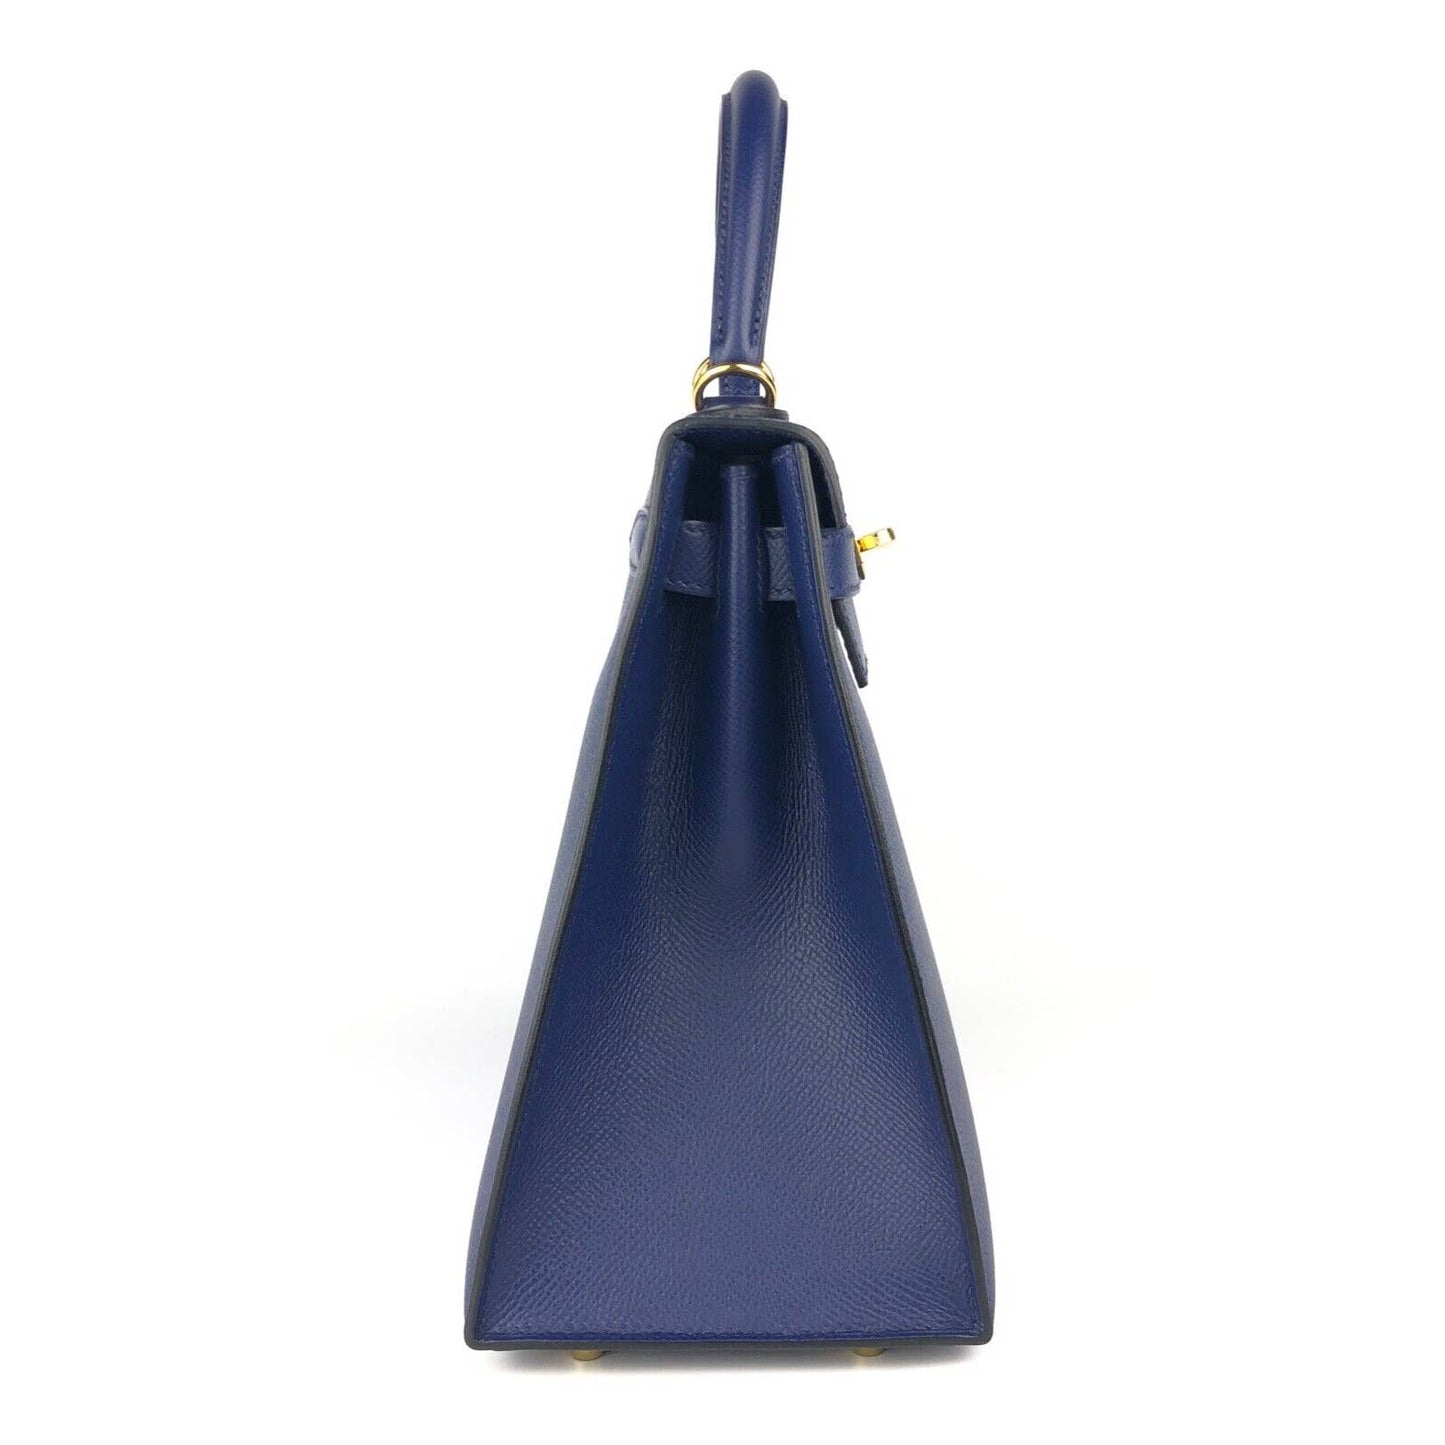 Hermes Kelly 28 Sellier Blue Sapphire Epsom Leather Gold Hardware Bag 2021